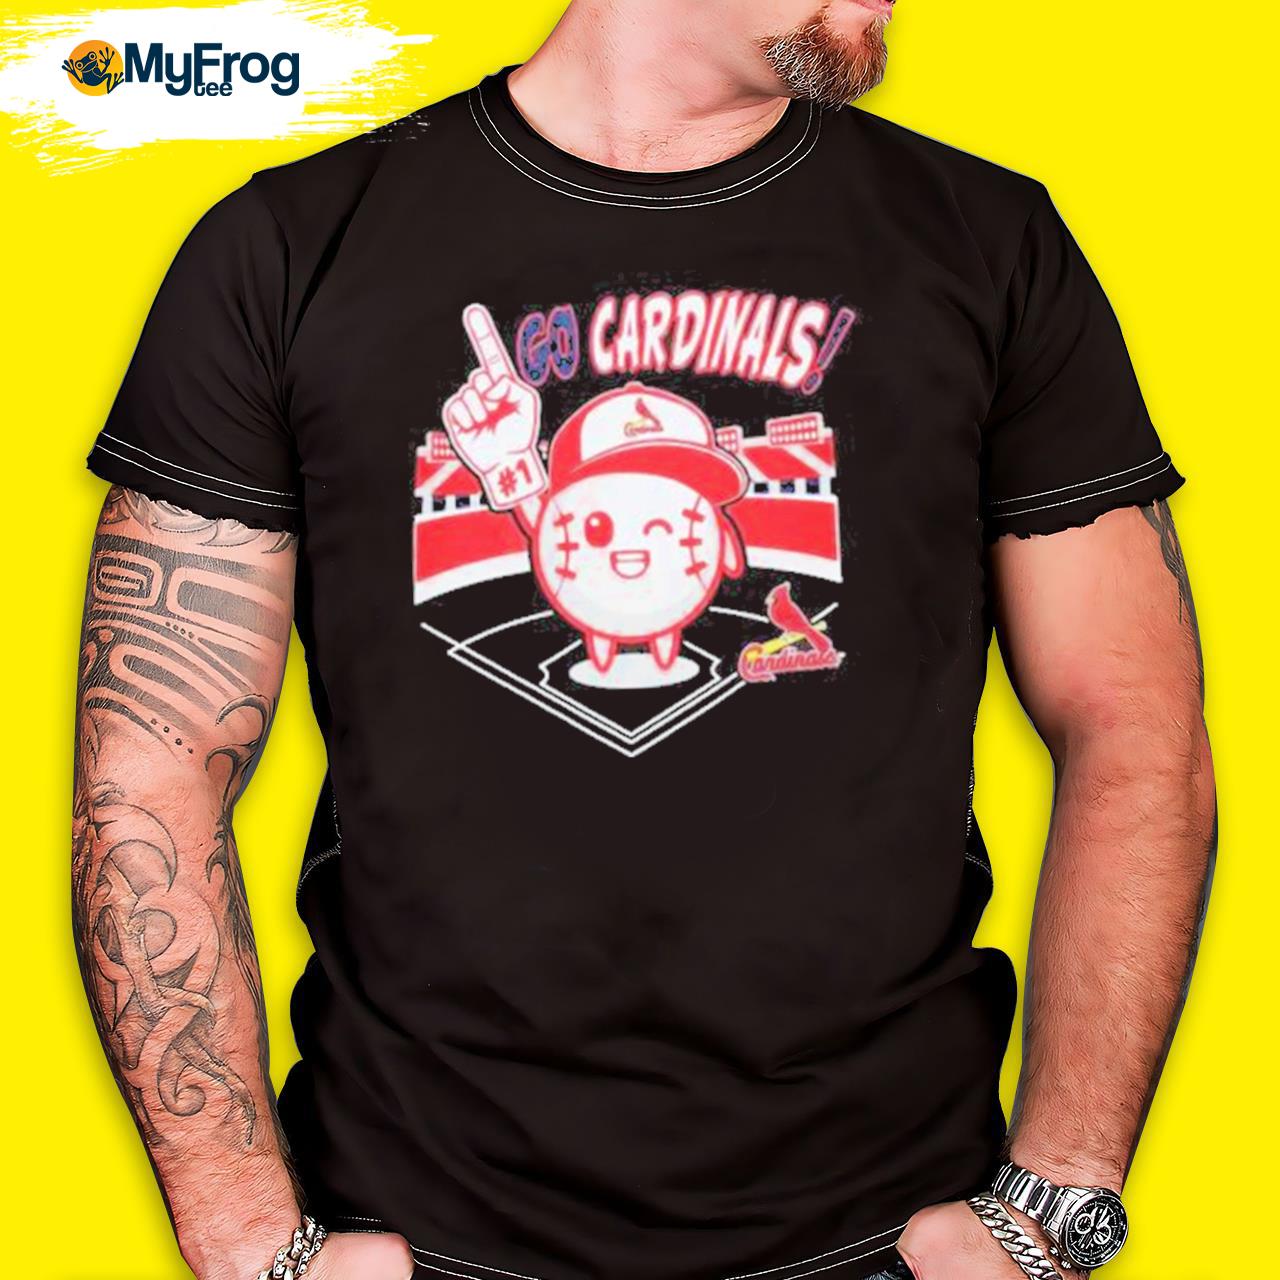 Men's St. Louis Cardinals Intense T-Shirt